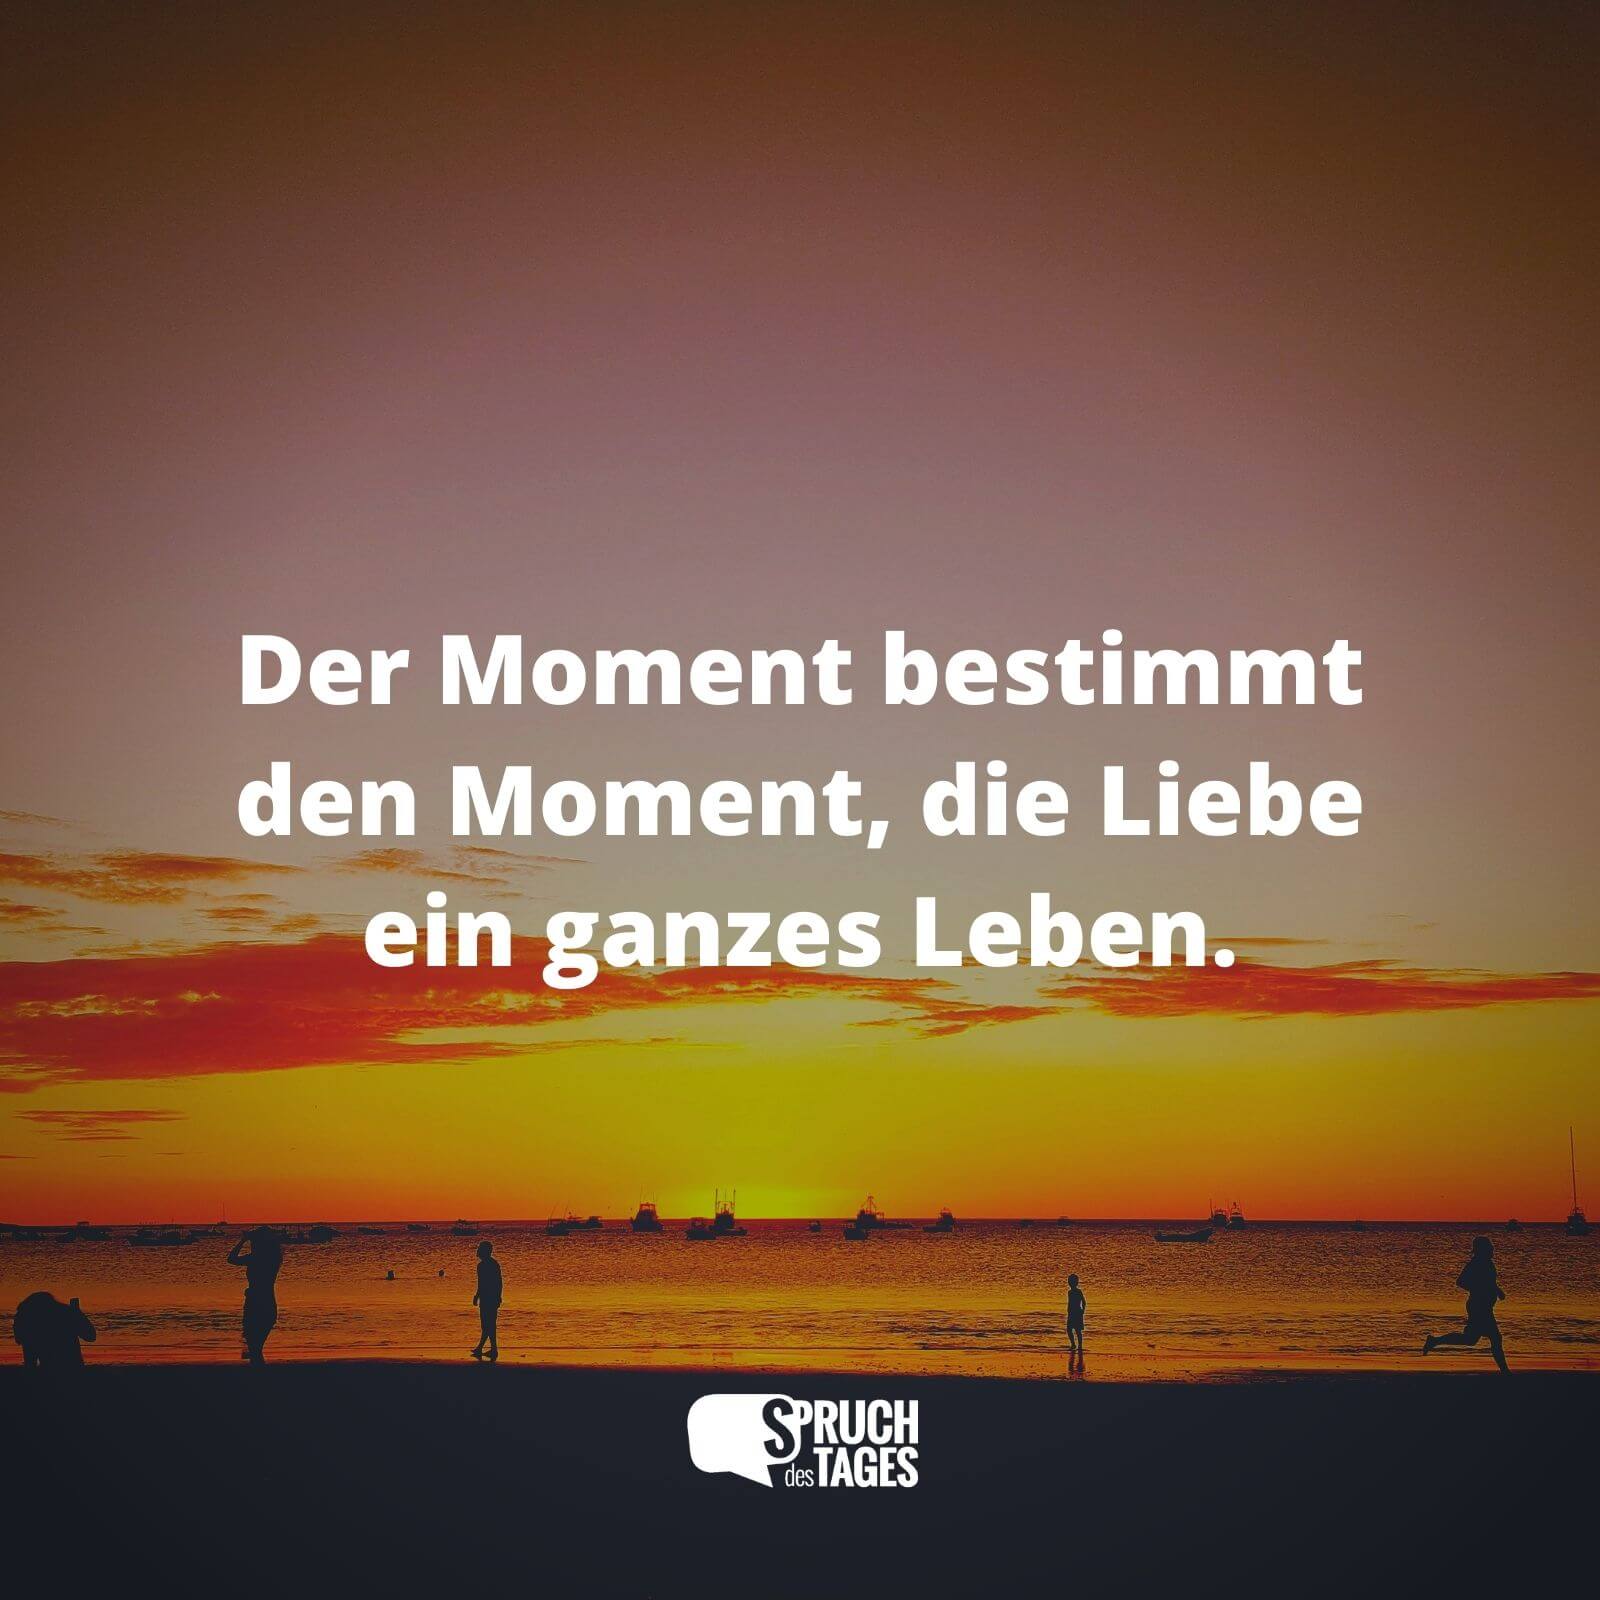 Der Moment bestimmt den Moment, die Liebe ein ganzes Leben.